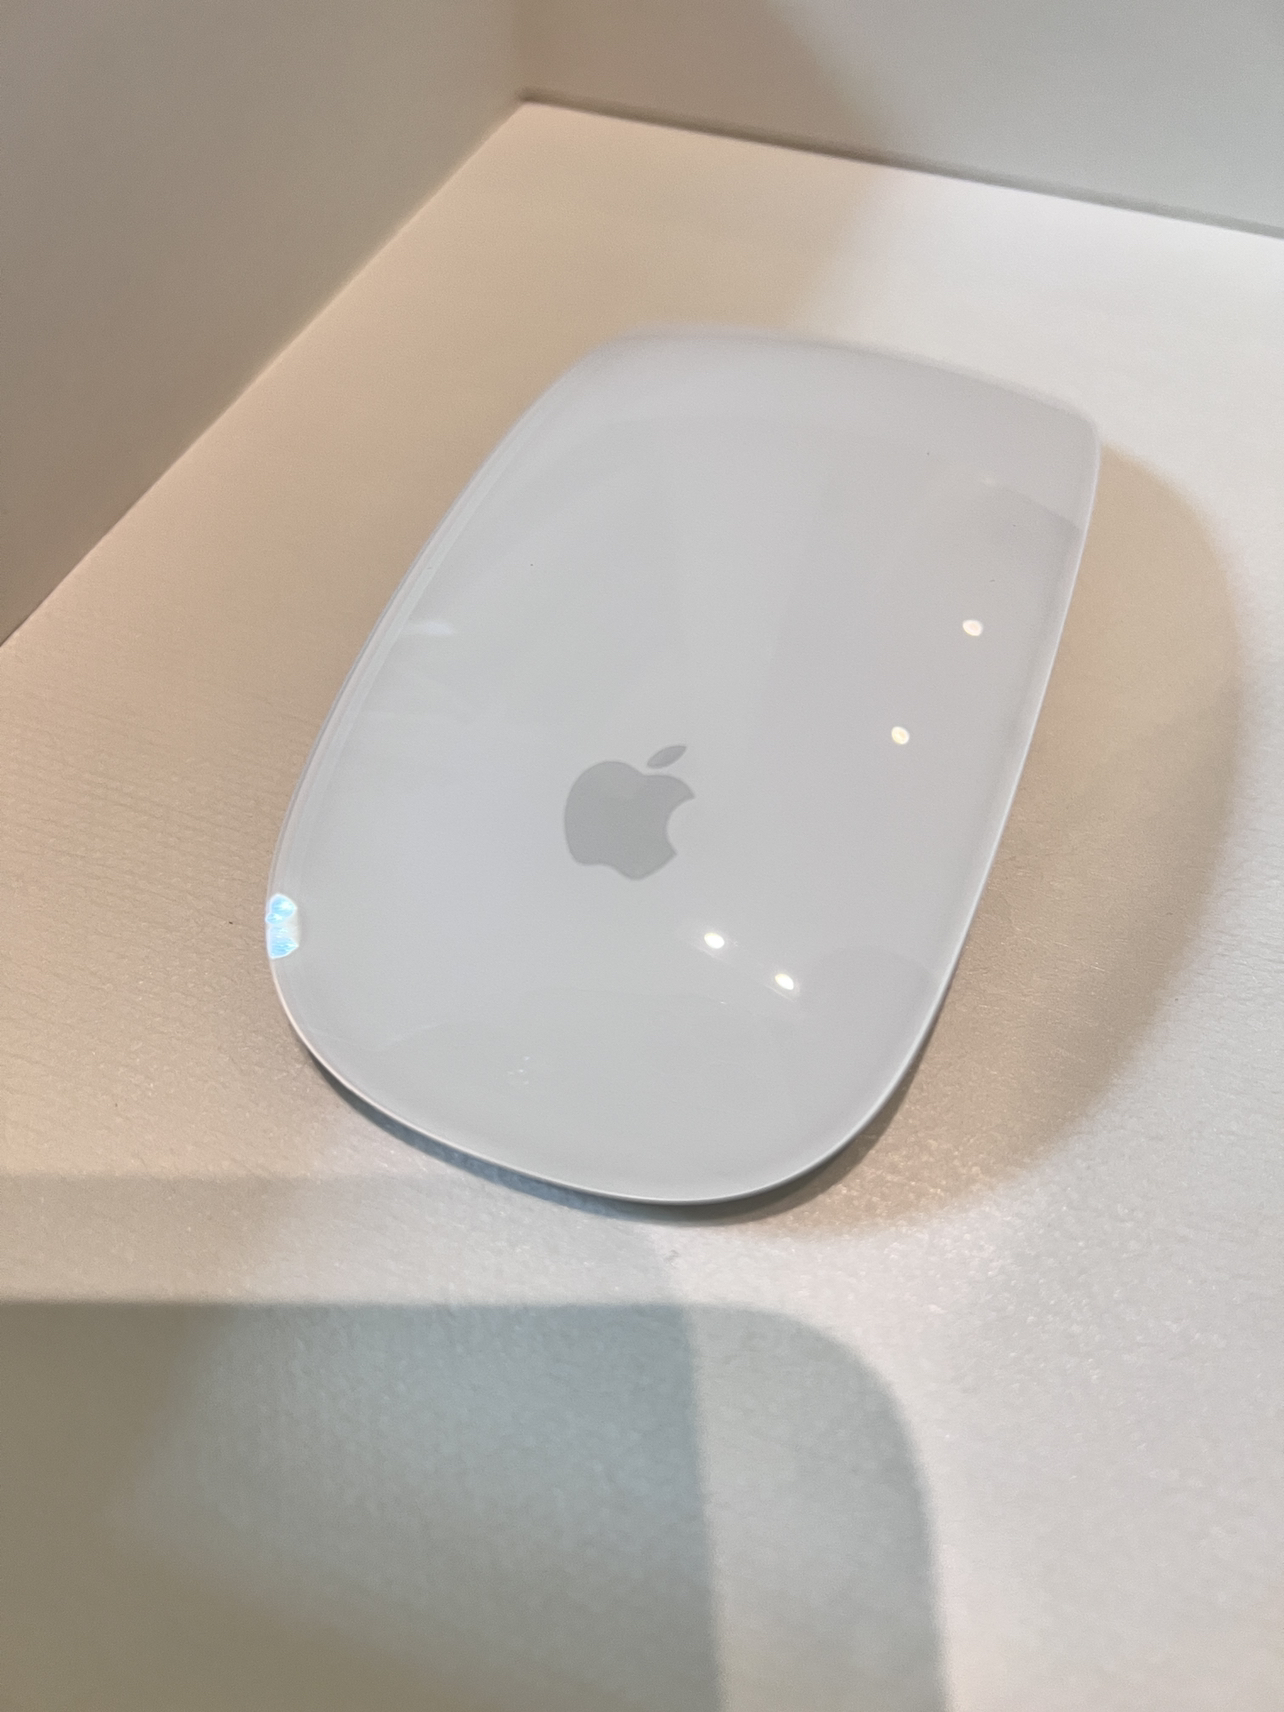 [鼠标套装]2020 新品 Apple MacBook Air 13.3英寸 笔记本电脑 M1处理器 8GB 256GB银色/MGN93CH/A+白色妙控鼠标晒单图